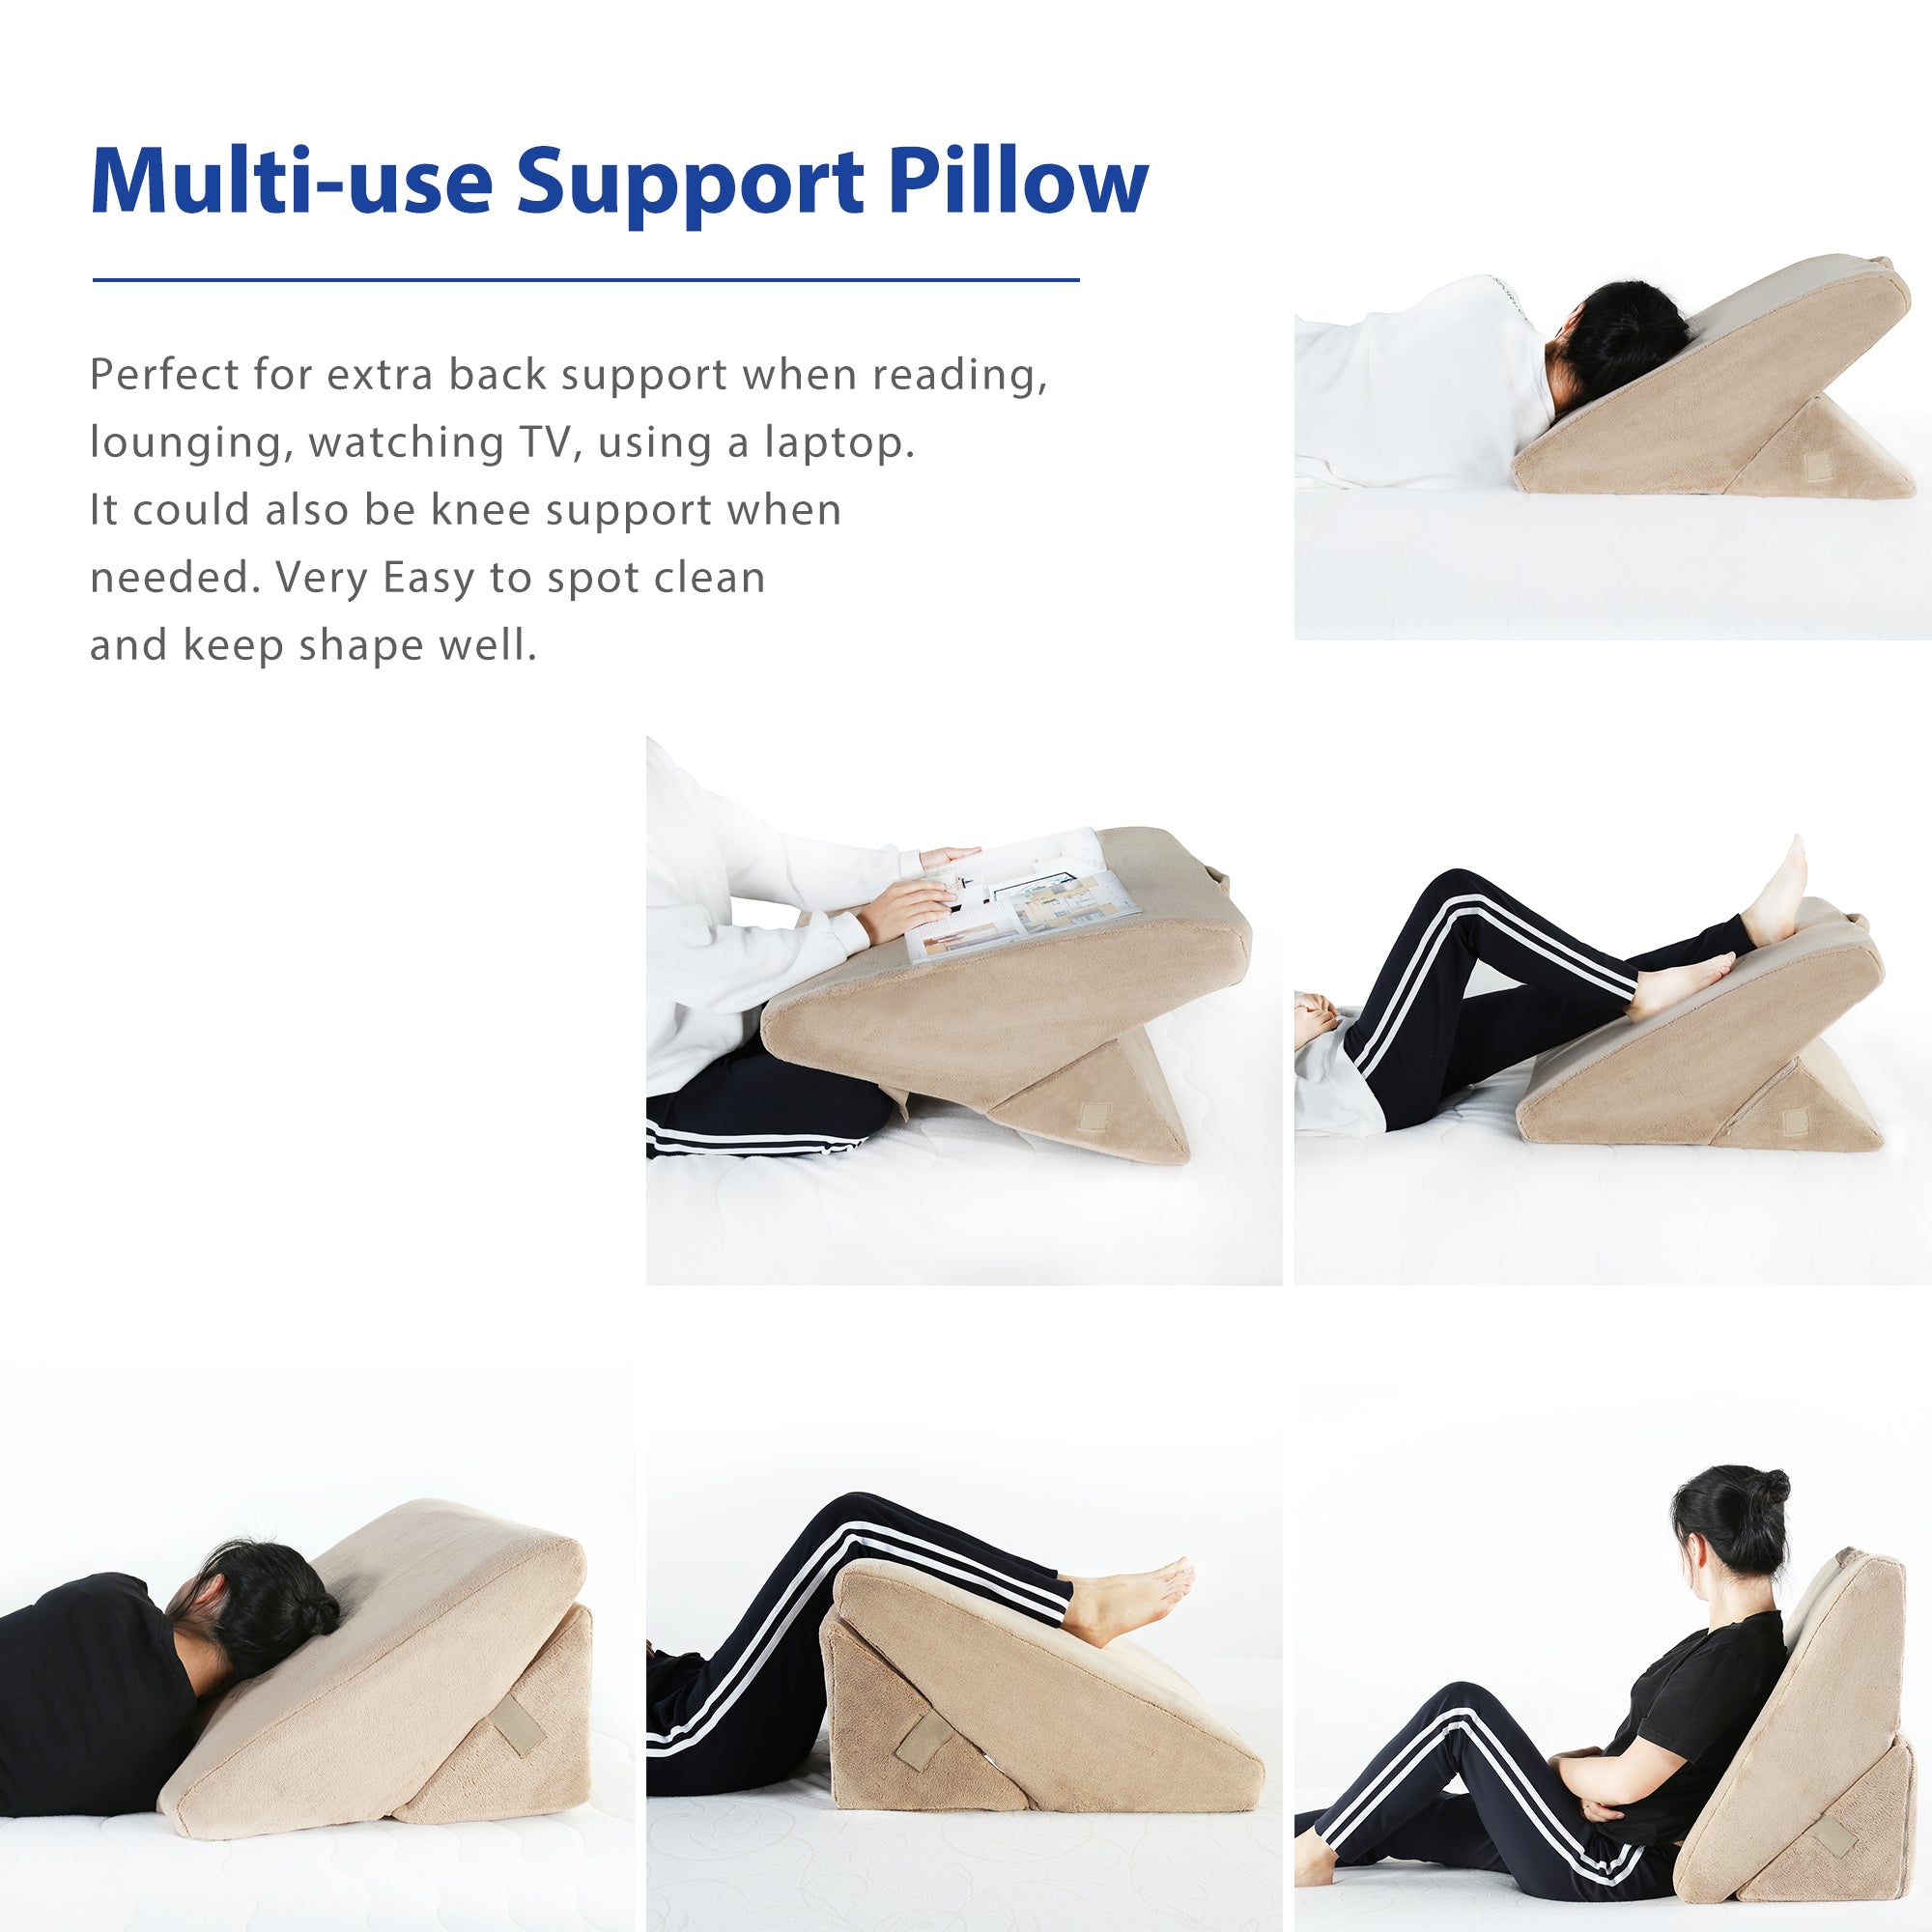 Olee Sleep Mattress Bed Wedge Pillow (Beige Color)